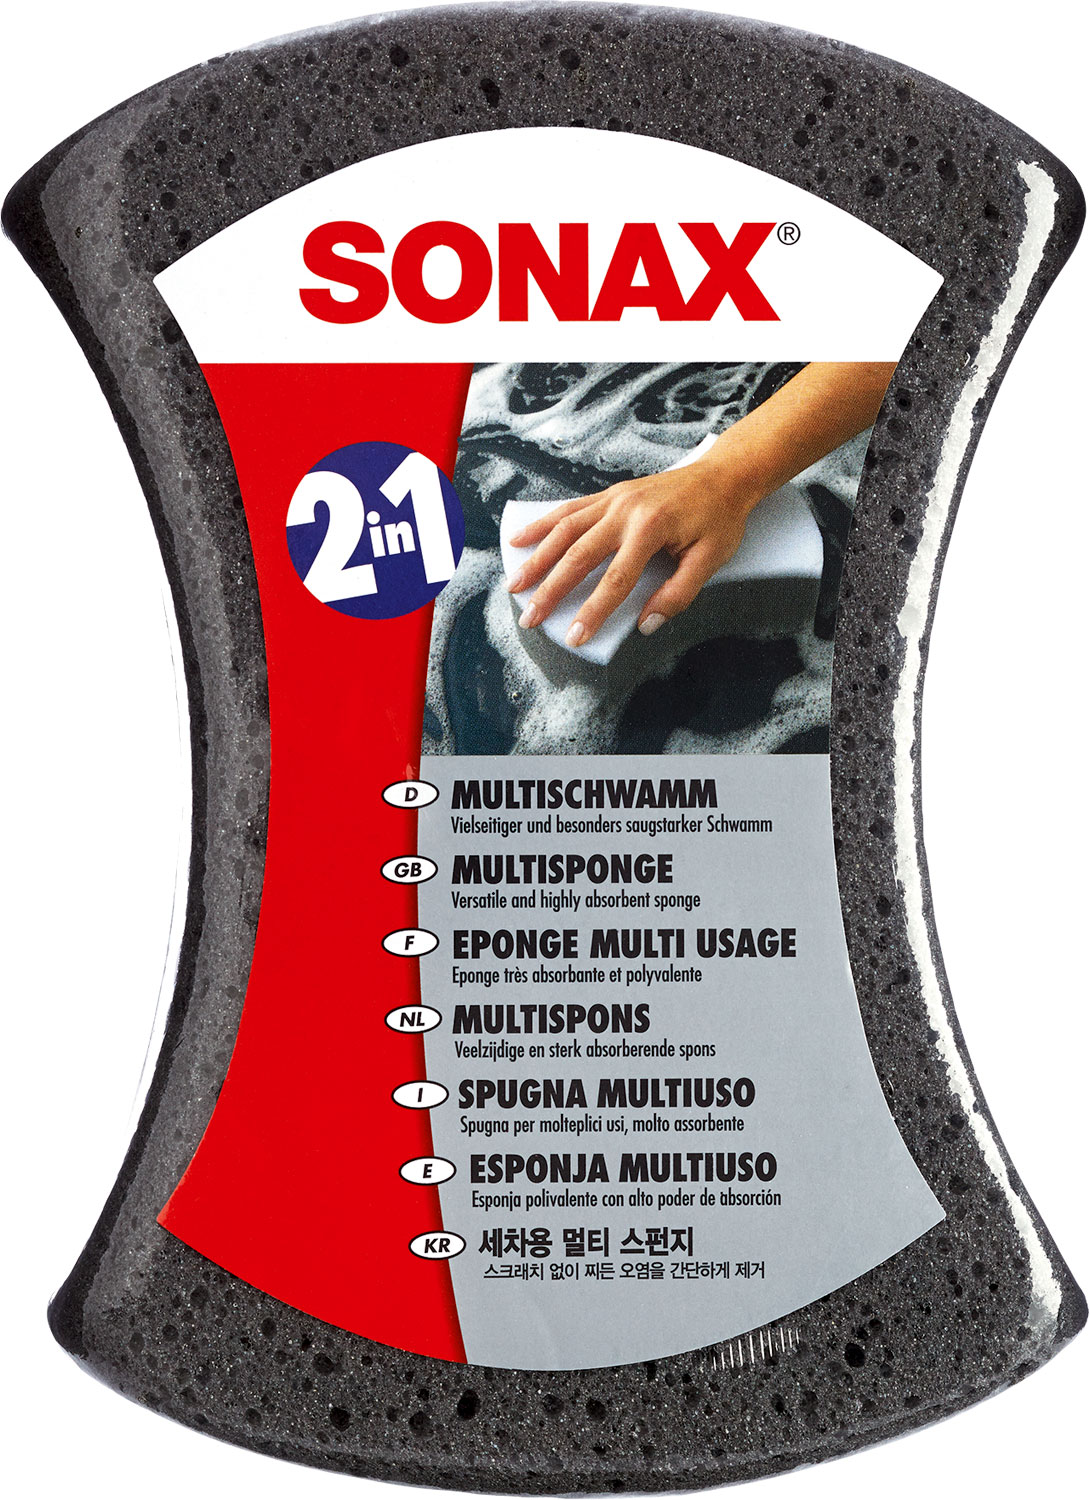 Sonax MultiSchwamm saugstarker Alleskönner